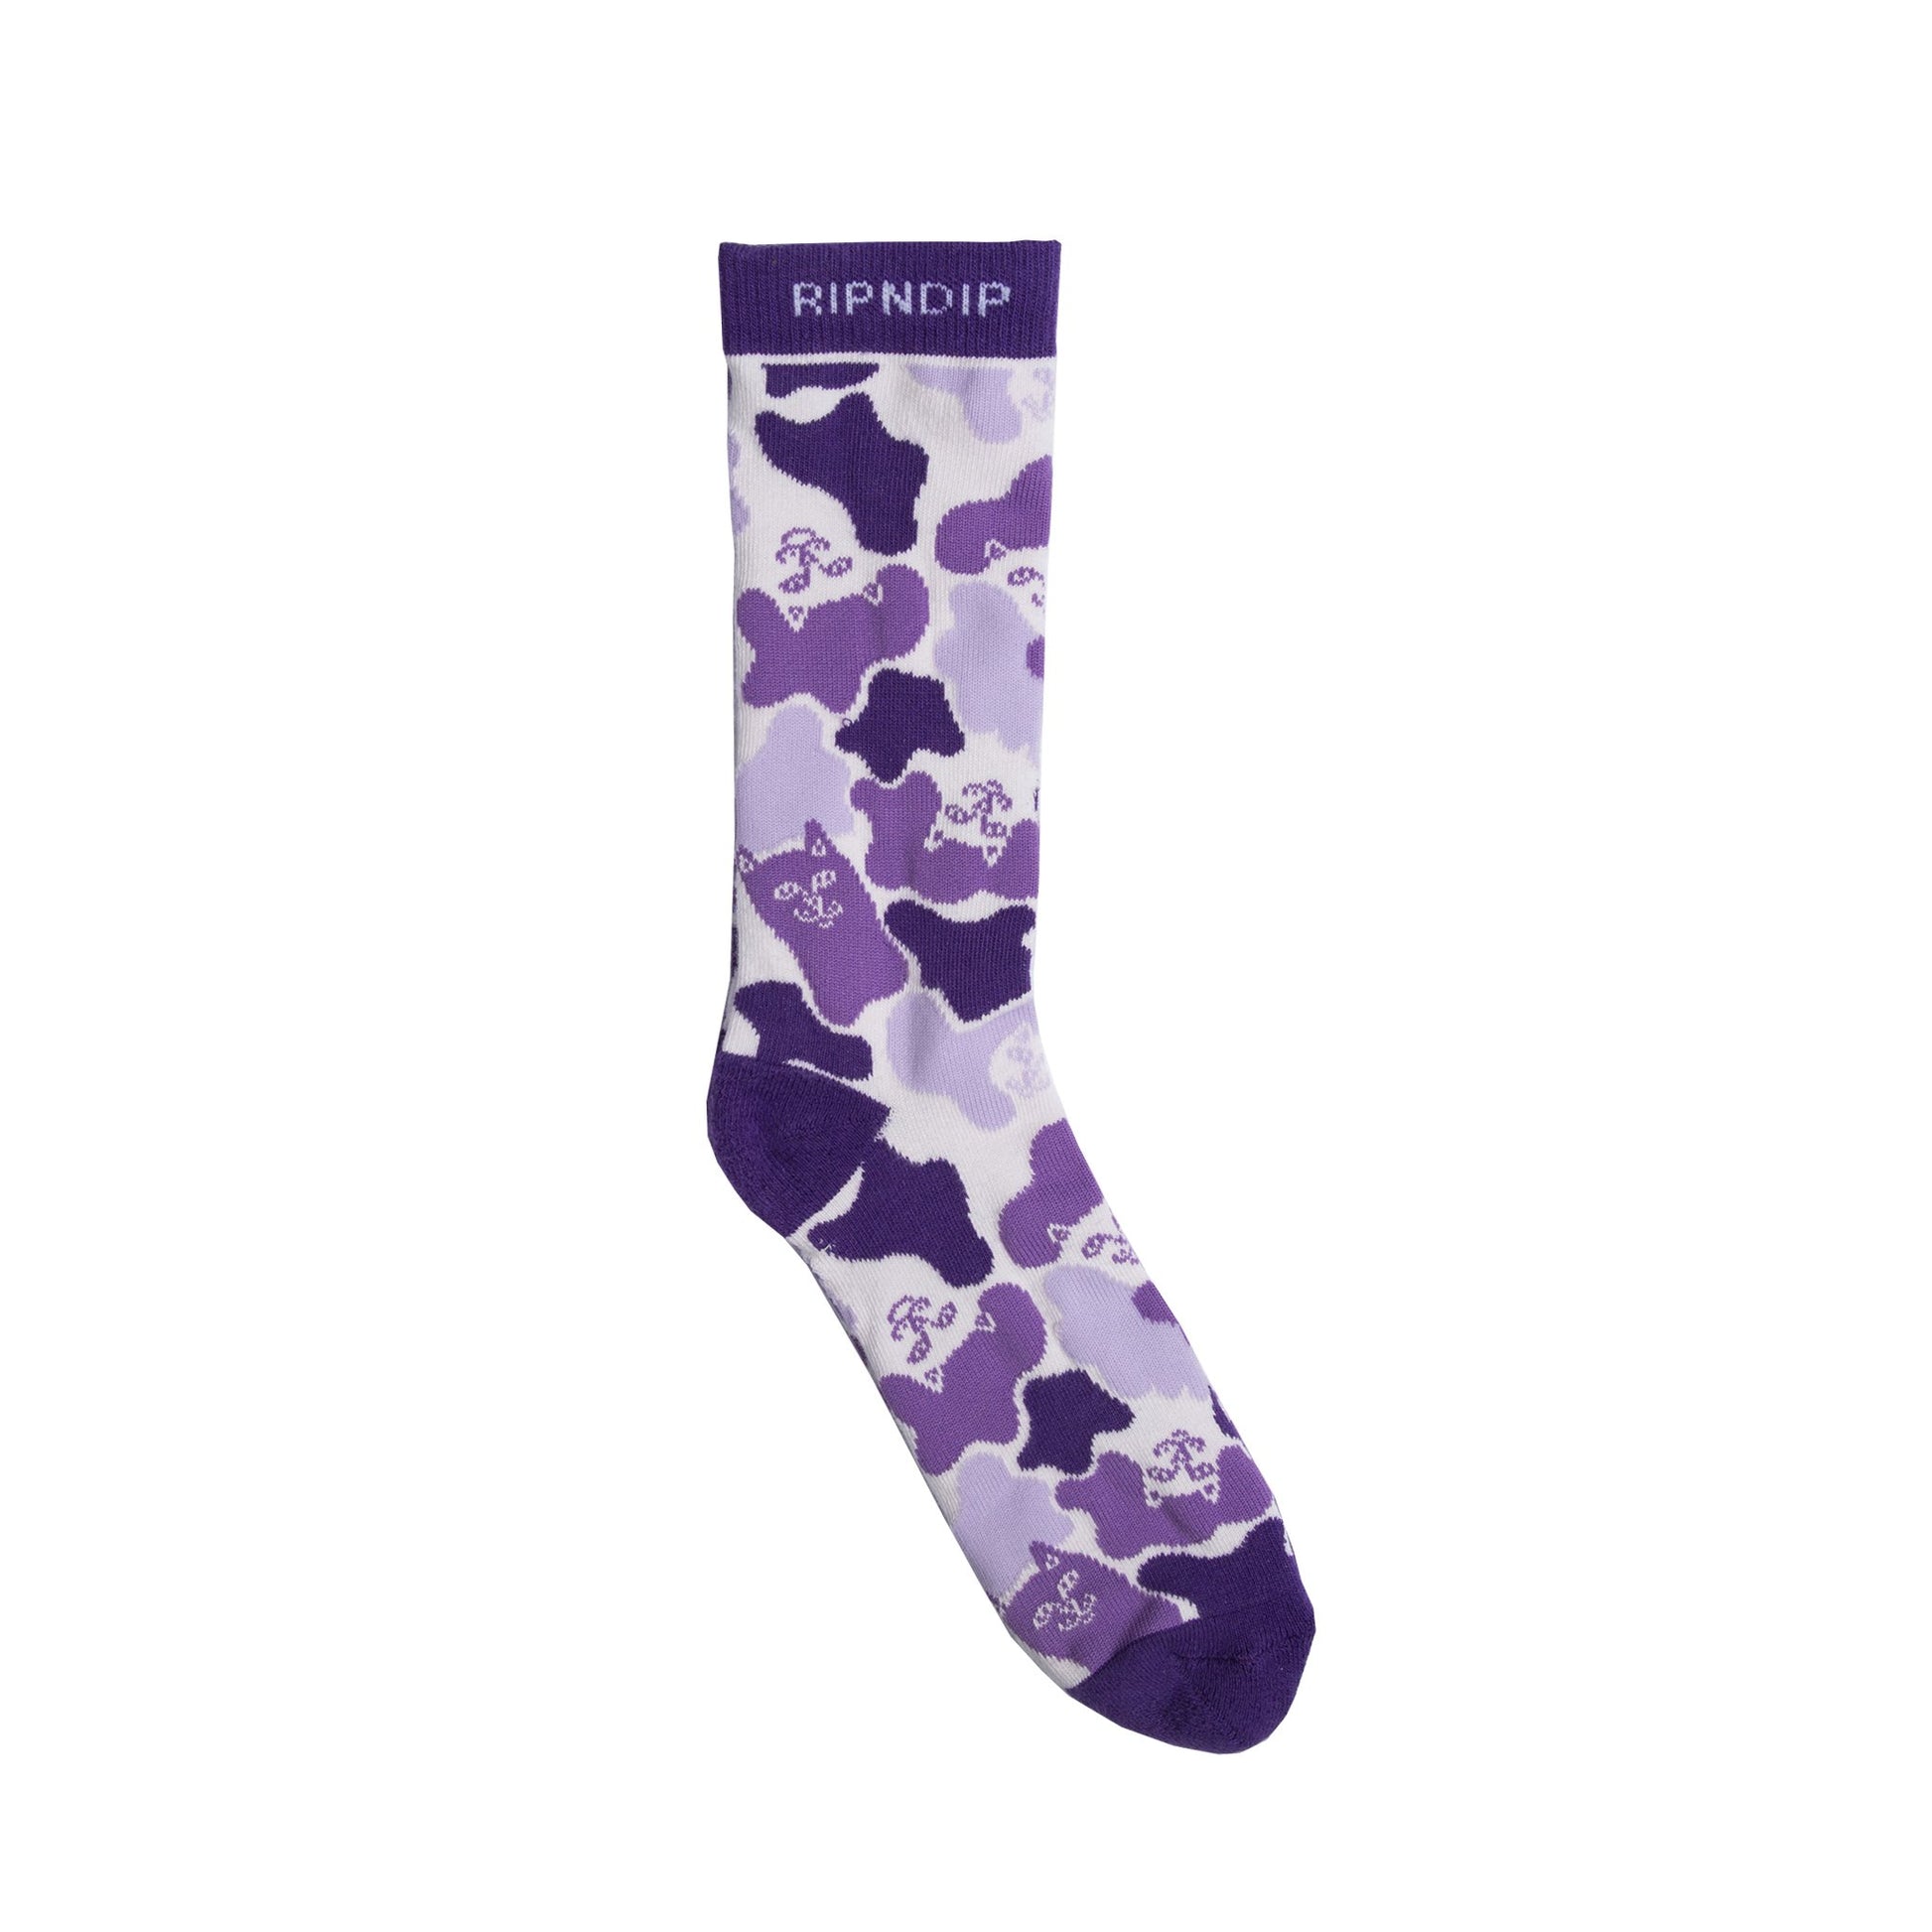 RIPNDIP - Invisible Socks, Purple Camo - The Giant Peach